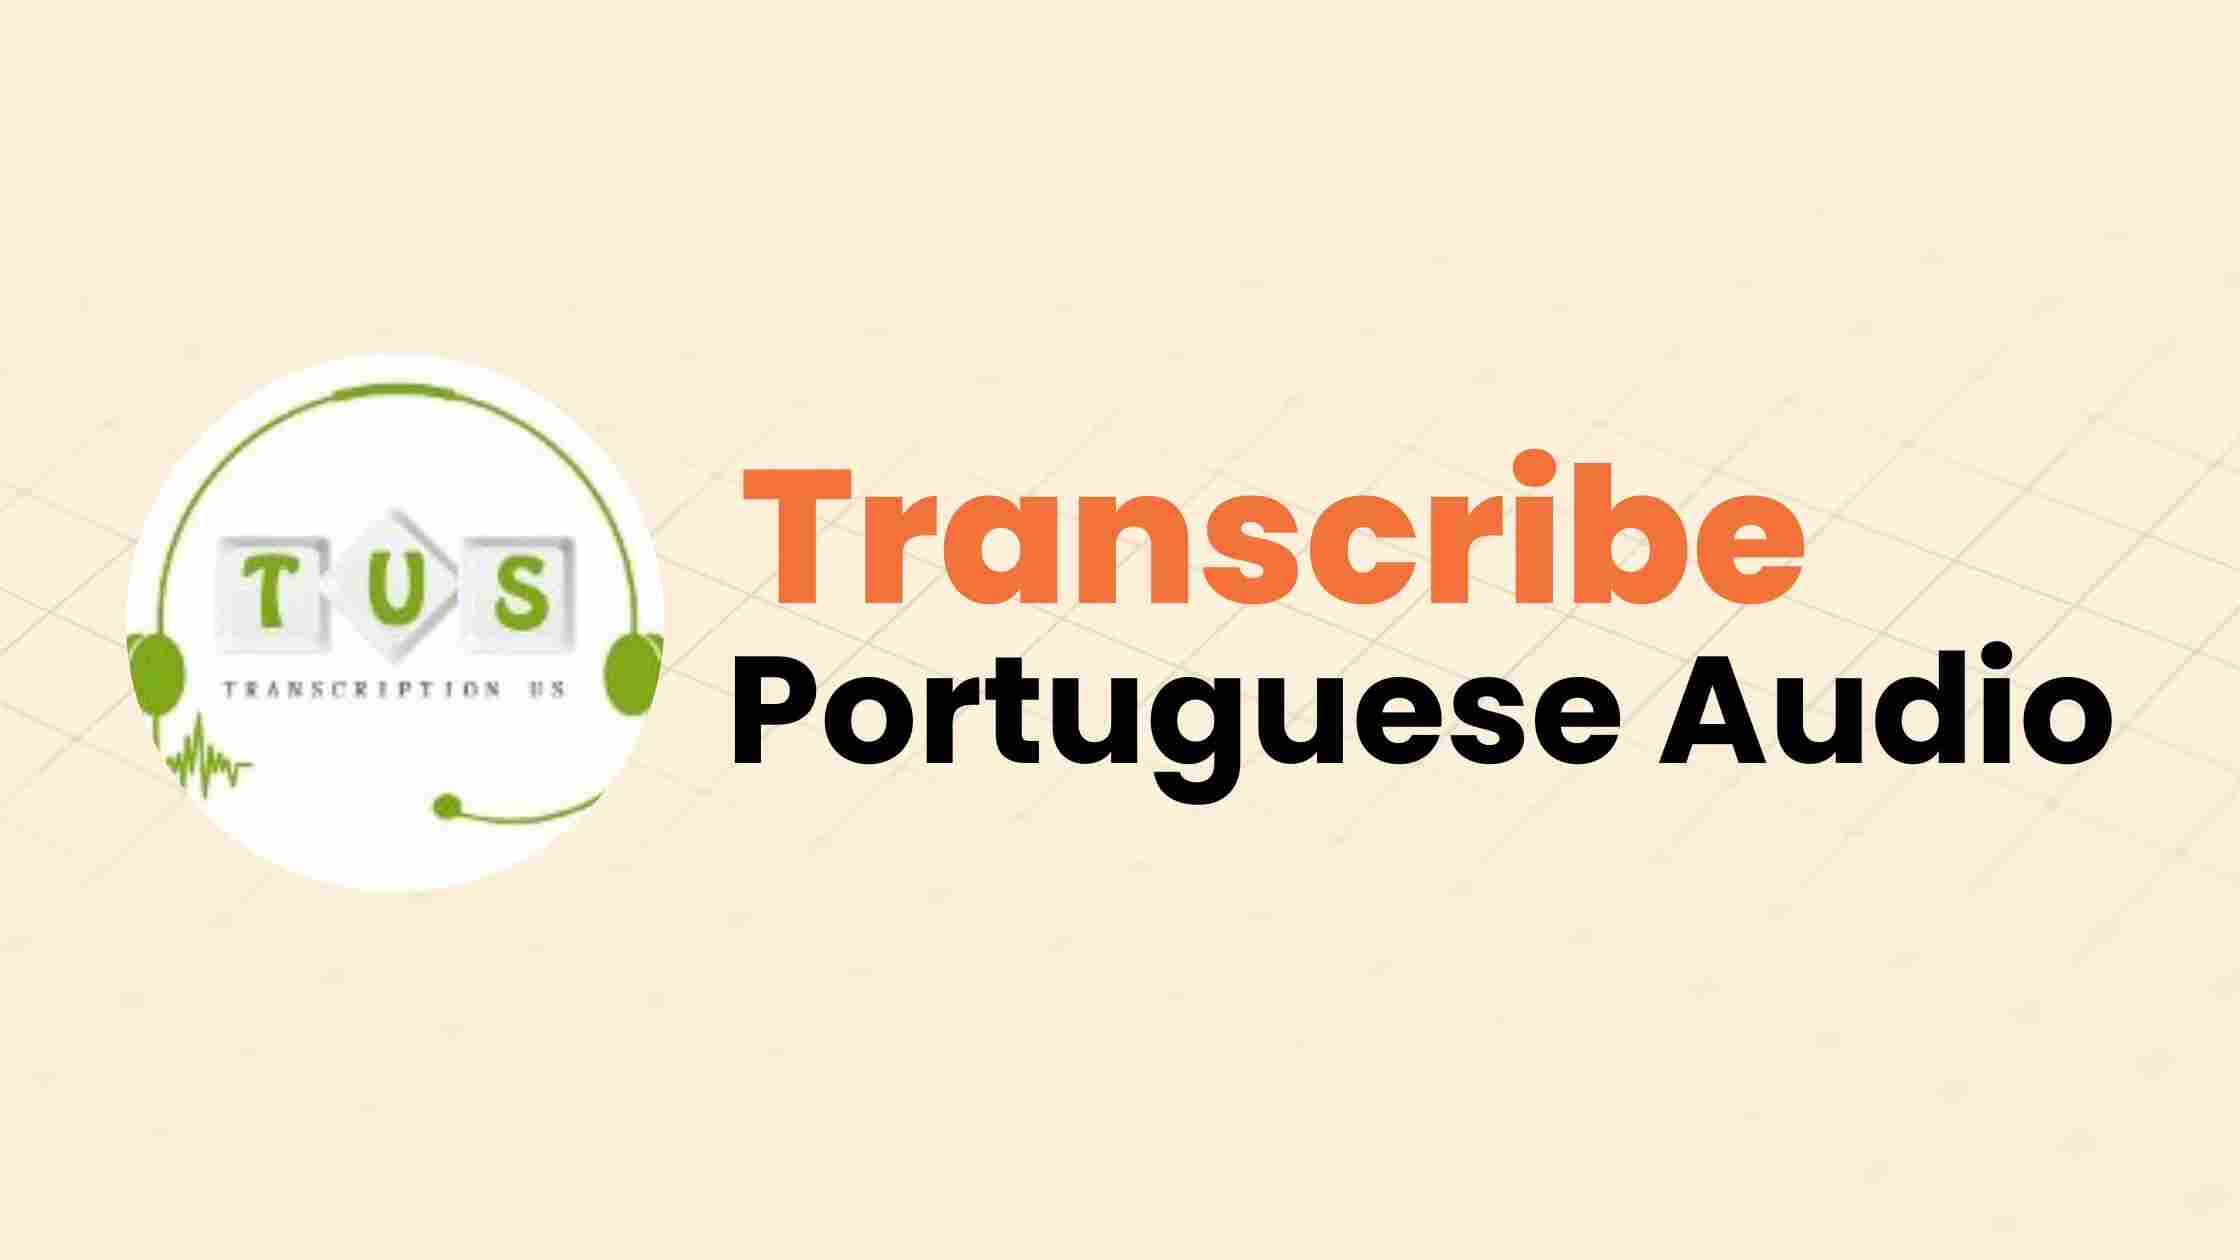 Transcribe Portuguese Audio